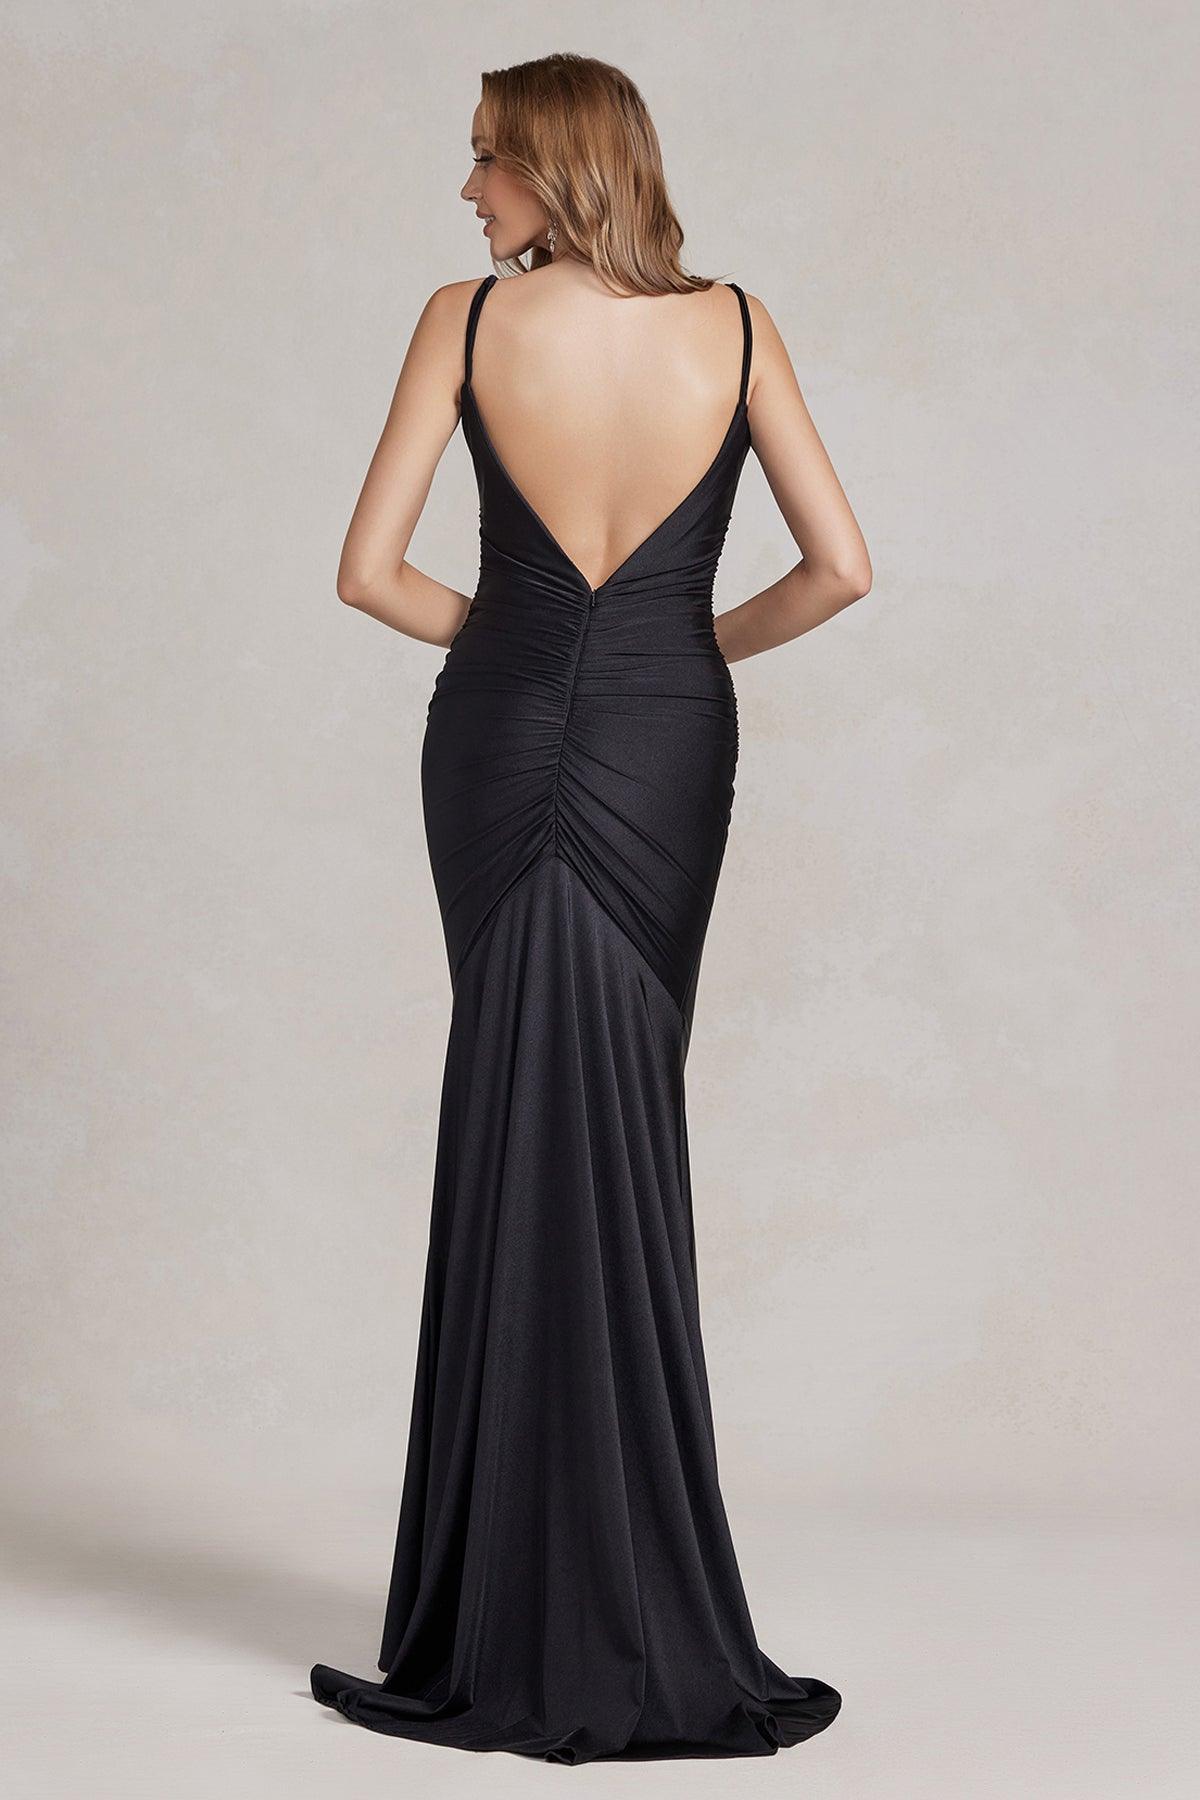 Nox Anabel G1146 Long One Shoulder Formal Prom Dress Black